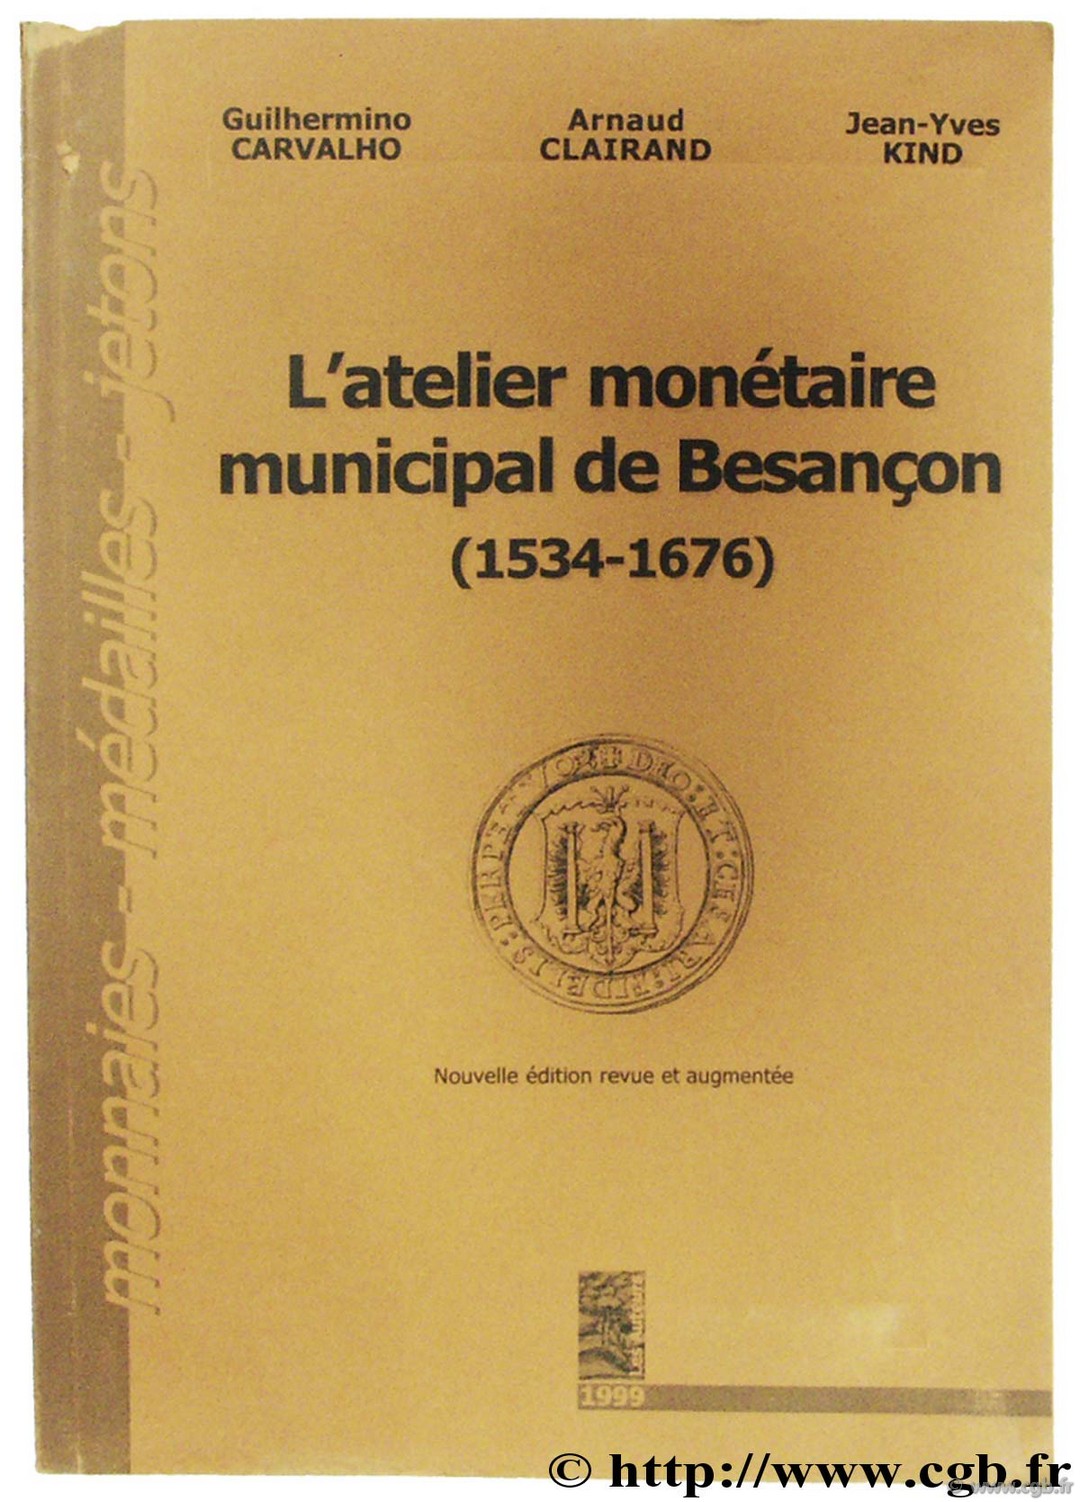 L atelier monétaire municipal de Besançon (1534-1676) CARVALHO G., CLAIRAND A., KIND J.-Y.